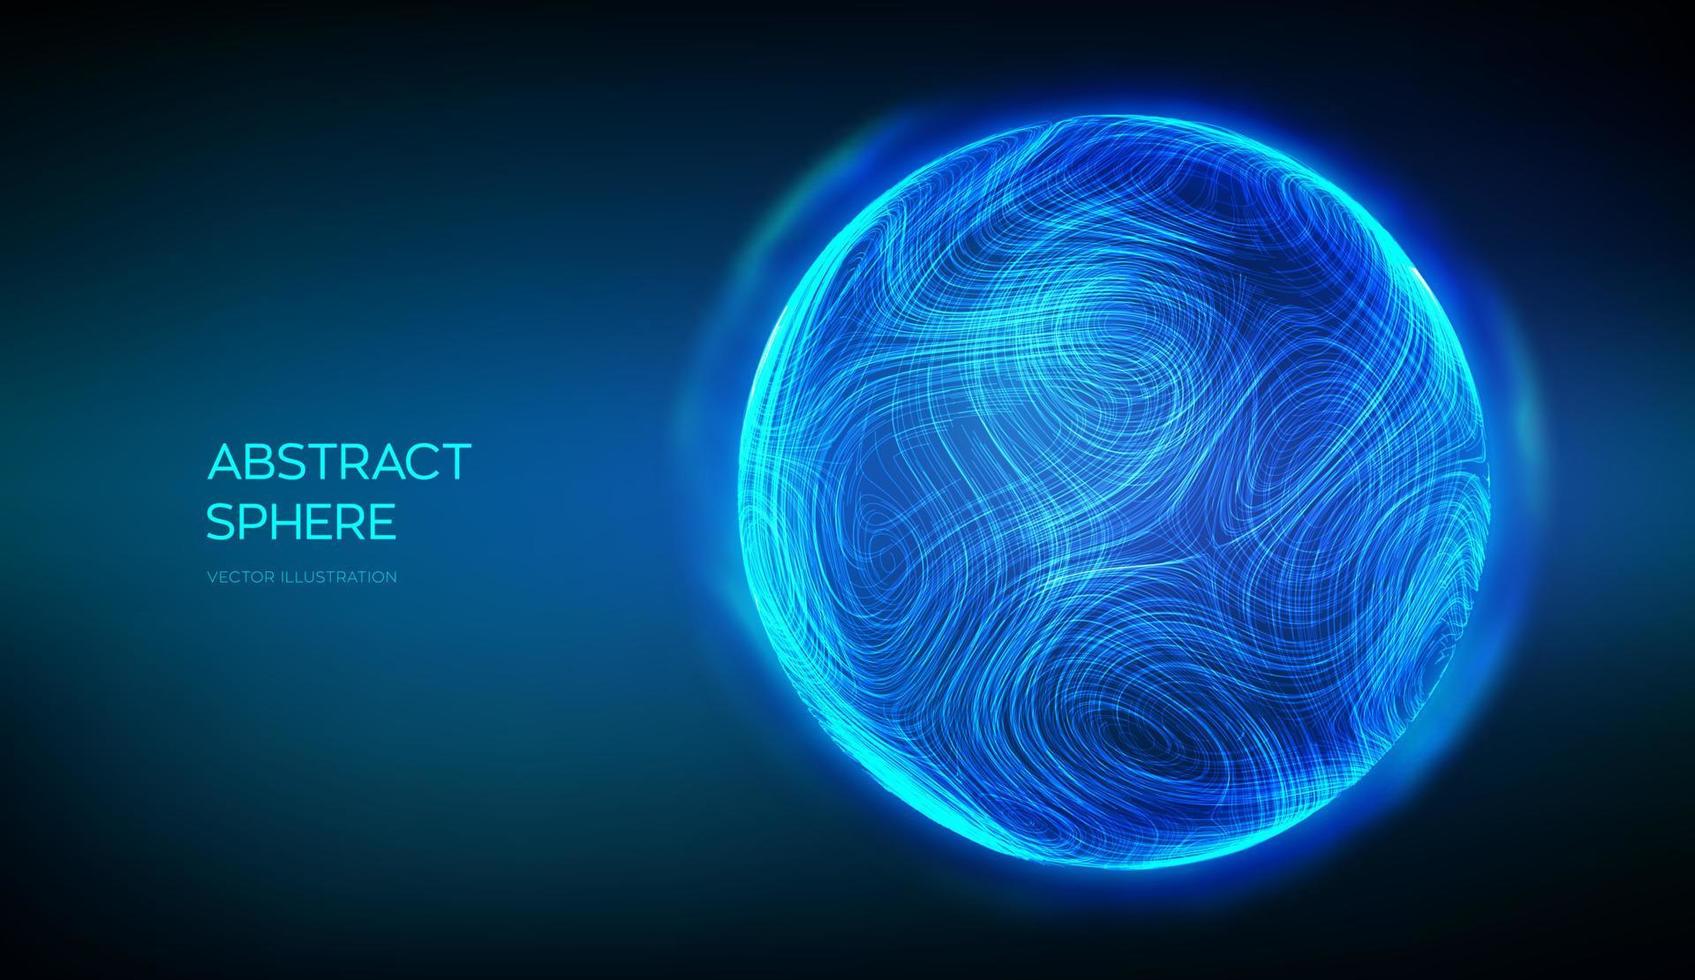 abstrakte Kugel auf blauem Hintergrund. 3D blauer Energieball. Fluidgeometrie mit ultradünnen Linien. dynamische verzerrte Sphäre. Wellenbewegung Partikelspuren. futuristische Ton- oder Datenwellenform. Vektor-Illustration. vektor